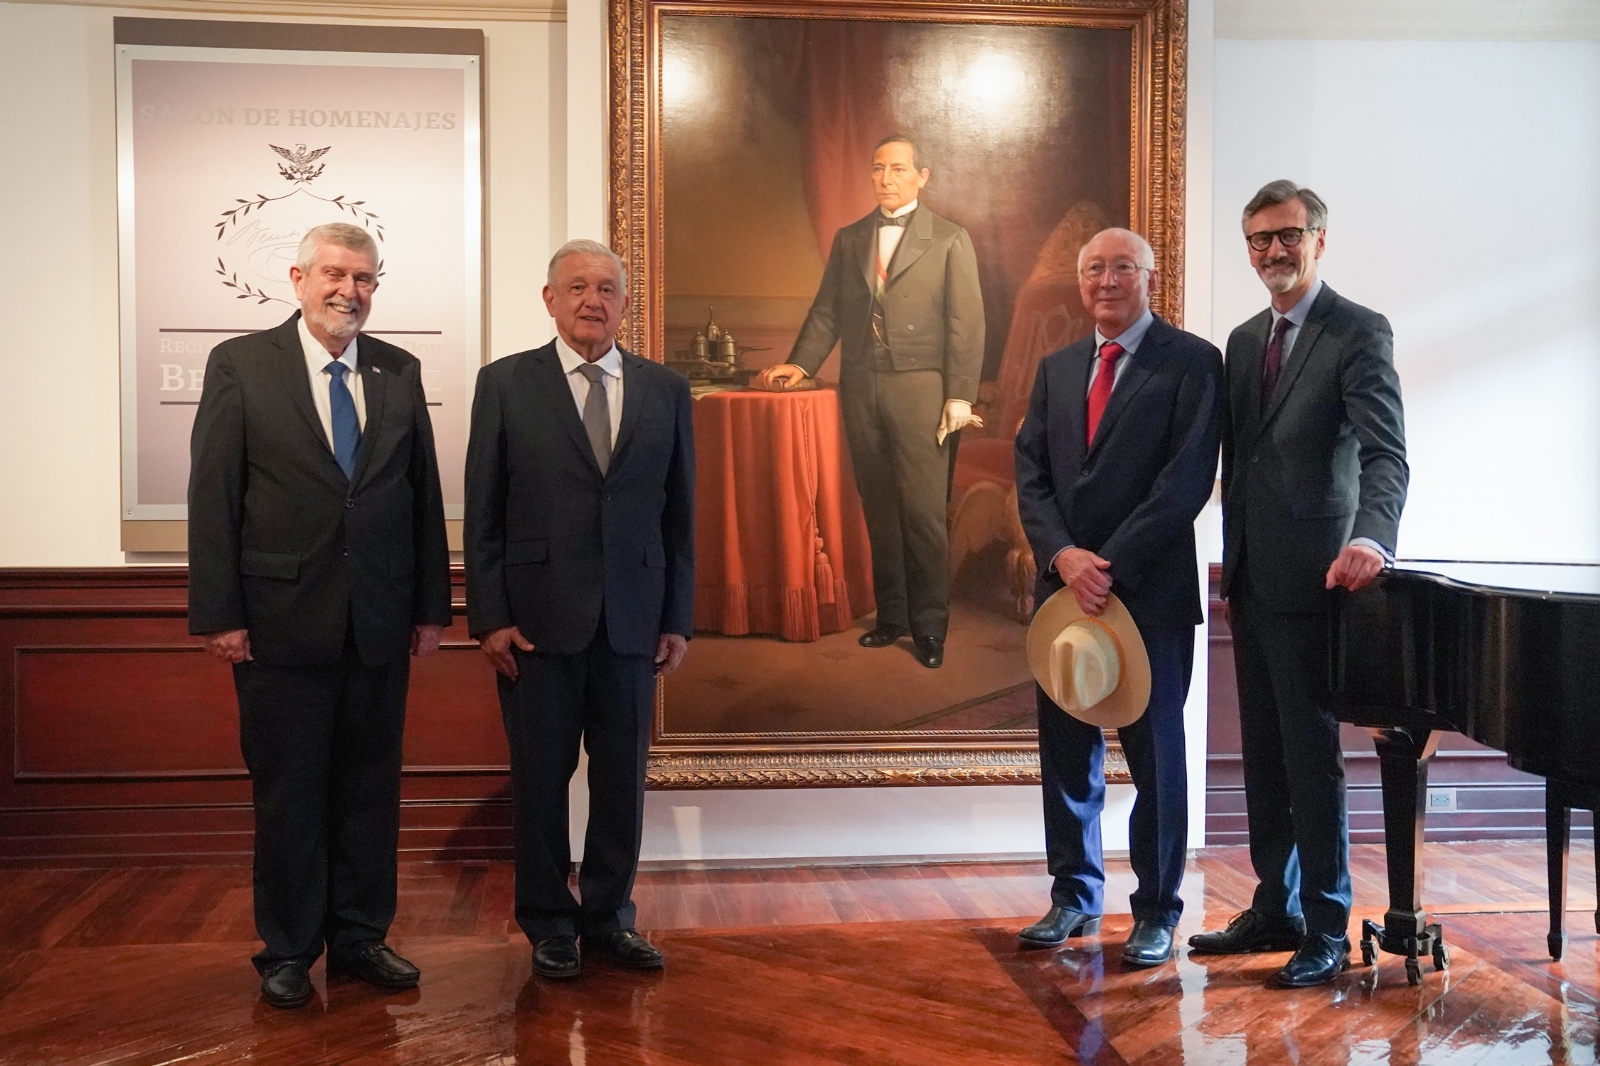 El Museo de Sitio Recinto de Homenaje a Don Benito Juárez en Palacio Nacional fue reabierto este lunes